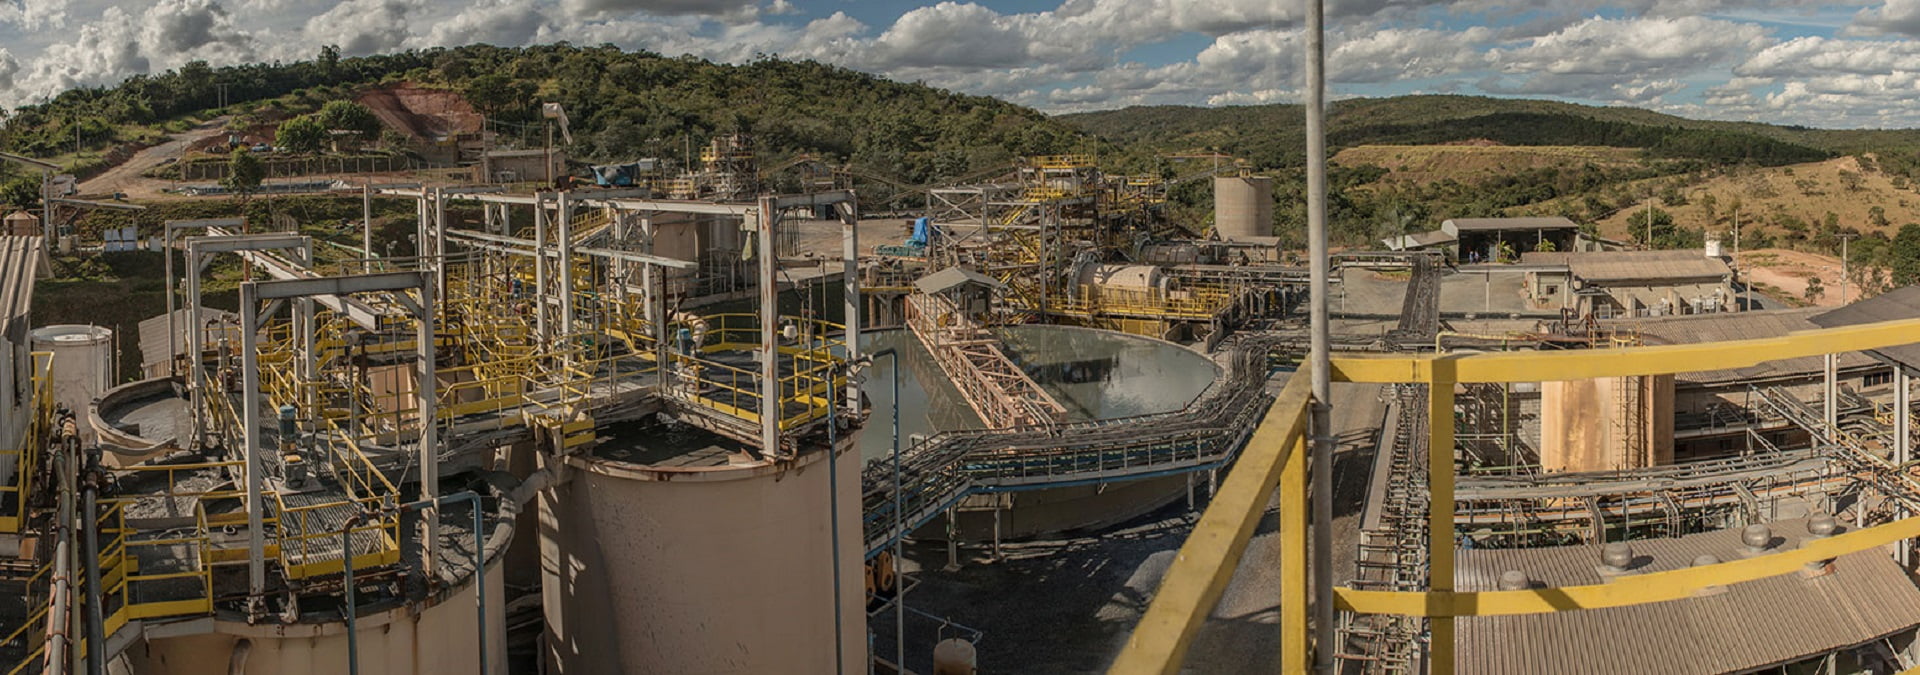 Foto: Divulgação / Jaguar Mining